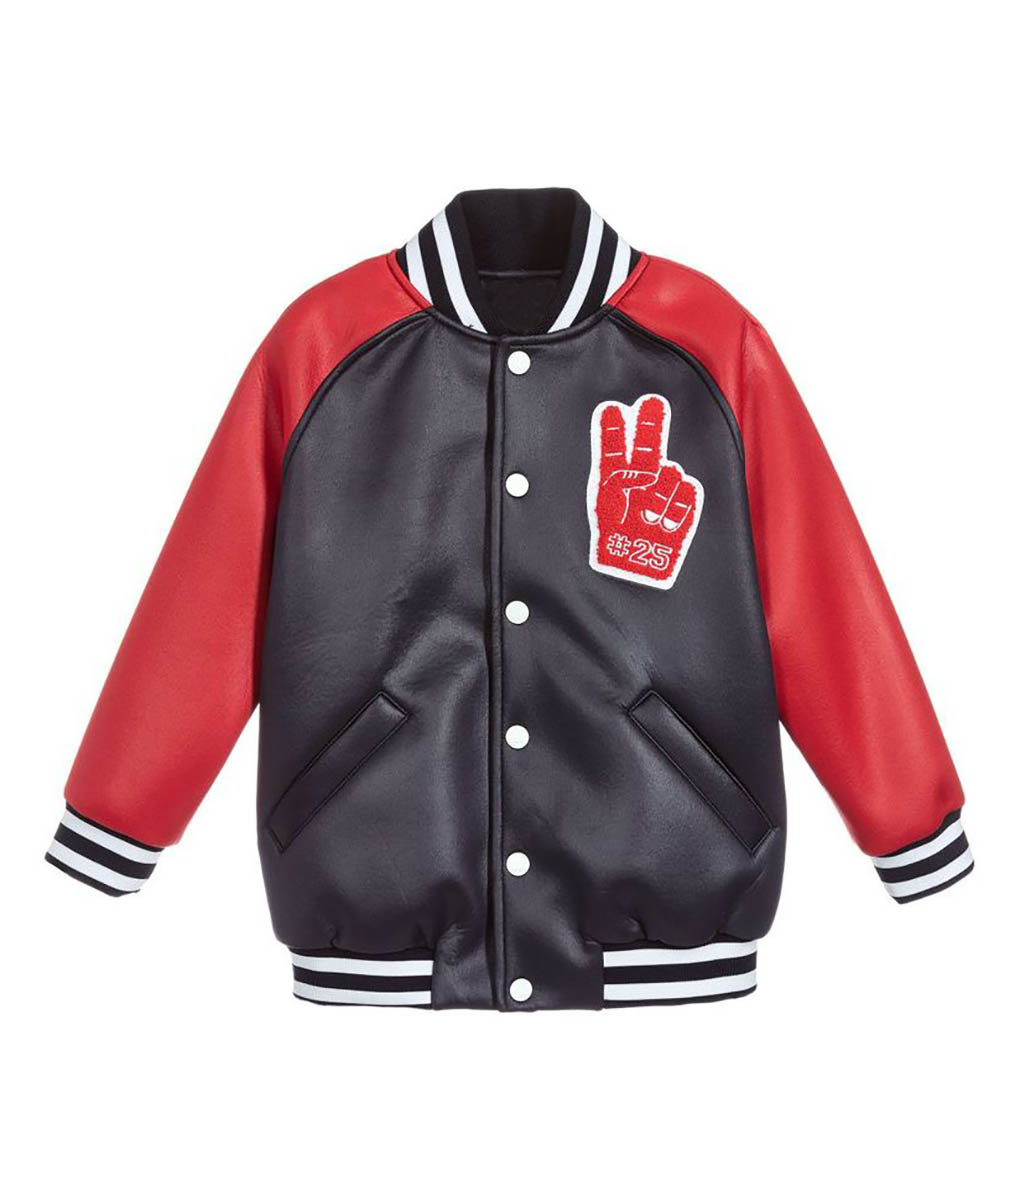 Fendi Boys Black and Red Varsity Leather Jacket